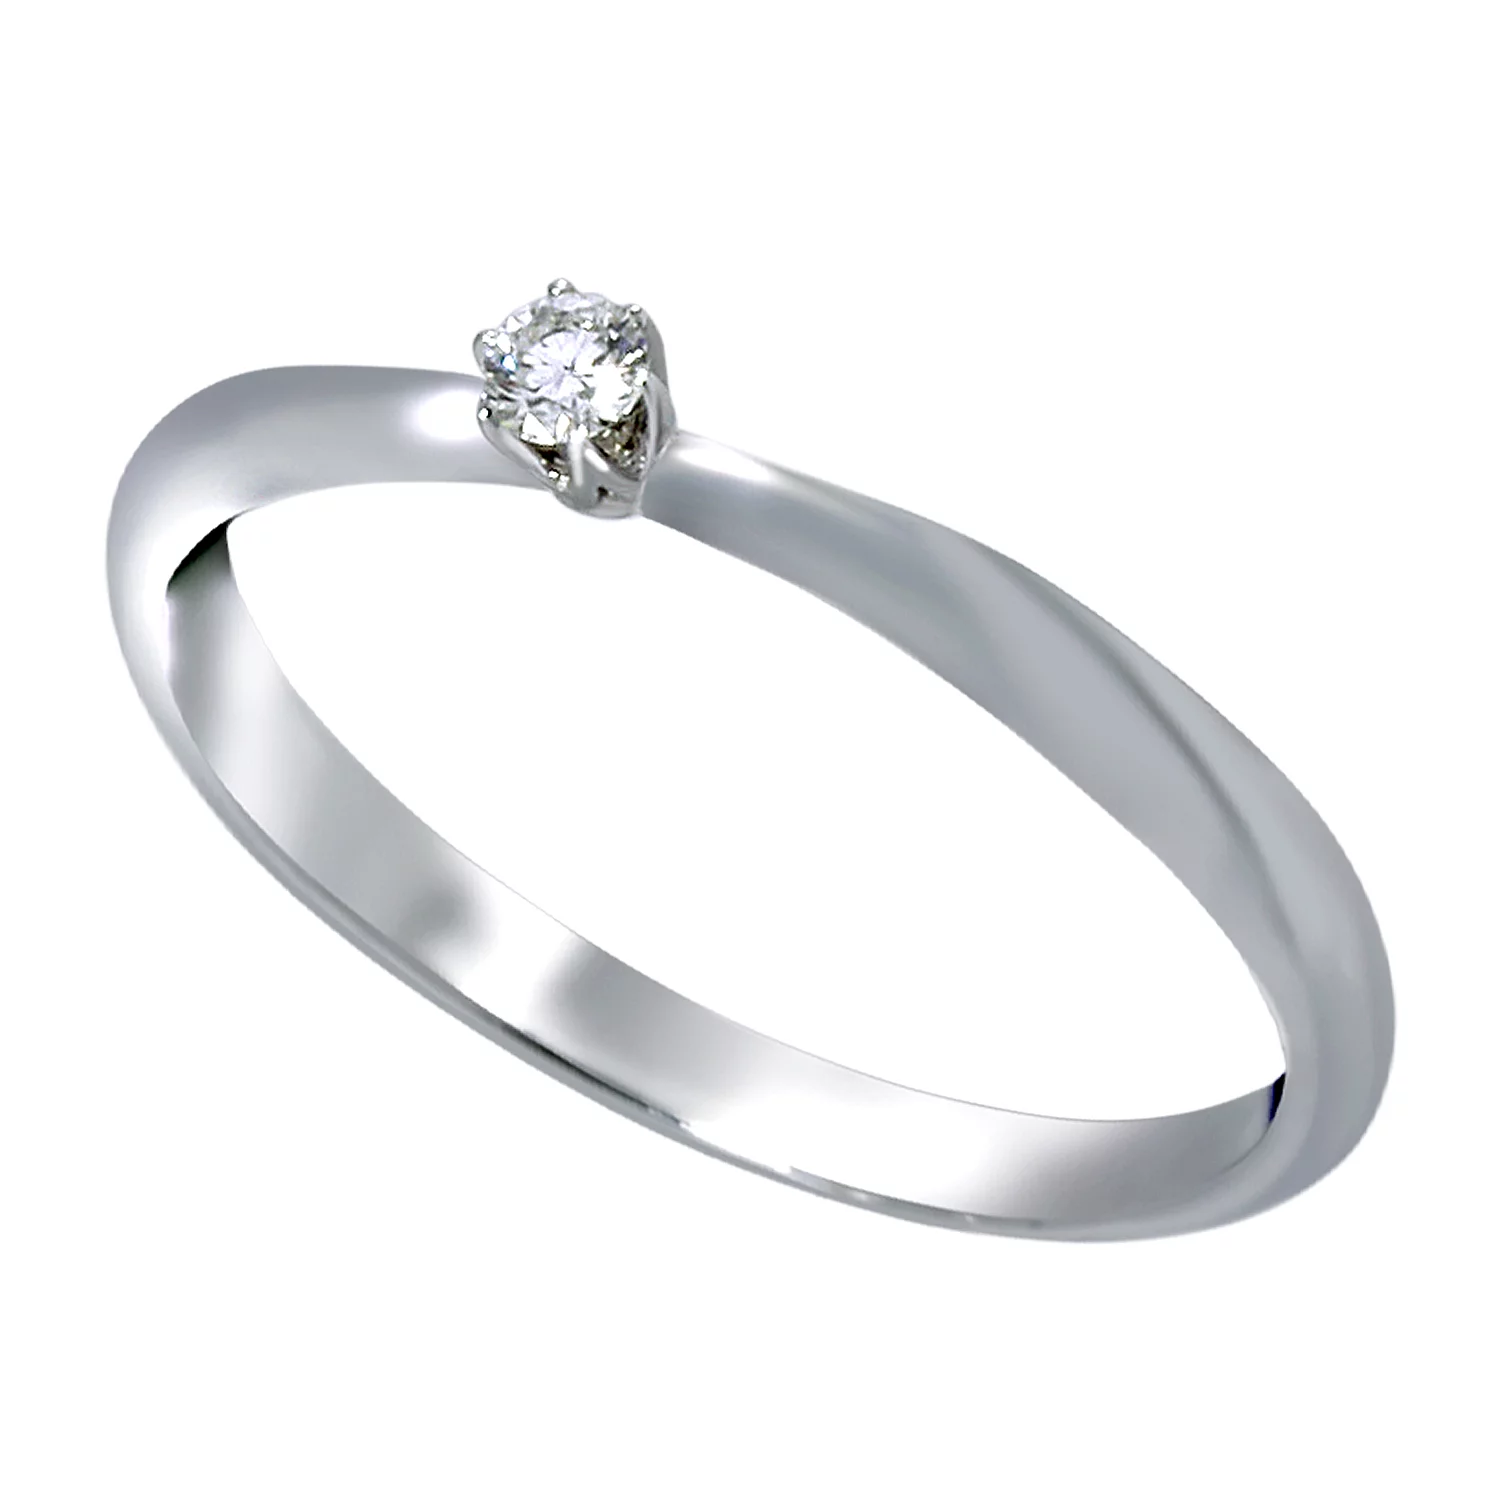 Кольцо для помолвки из белого золота с бриллиантом. Артикул 1108780202: цена, отзывы, фото – купить в интернет-магазине AURUM